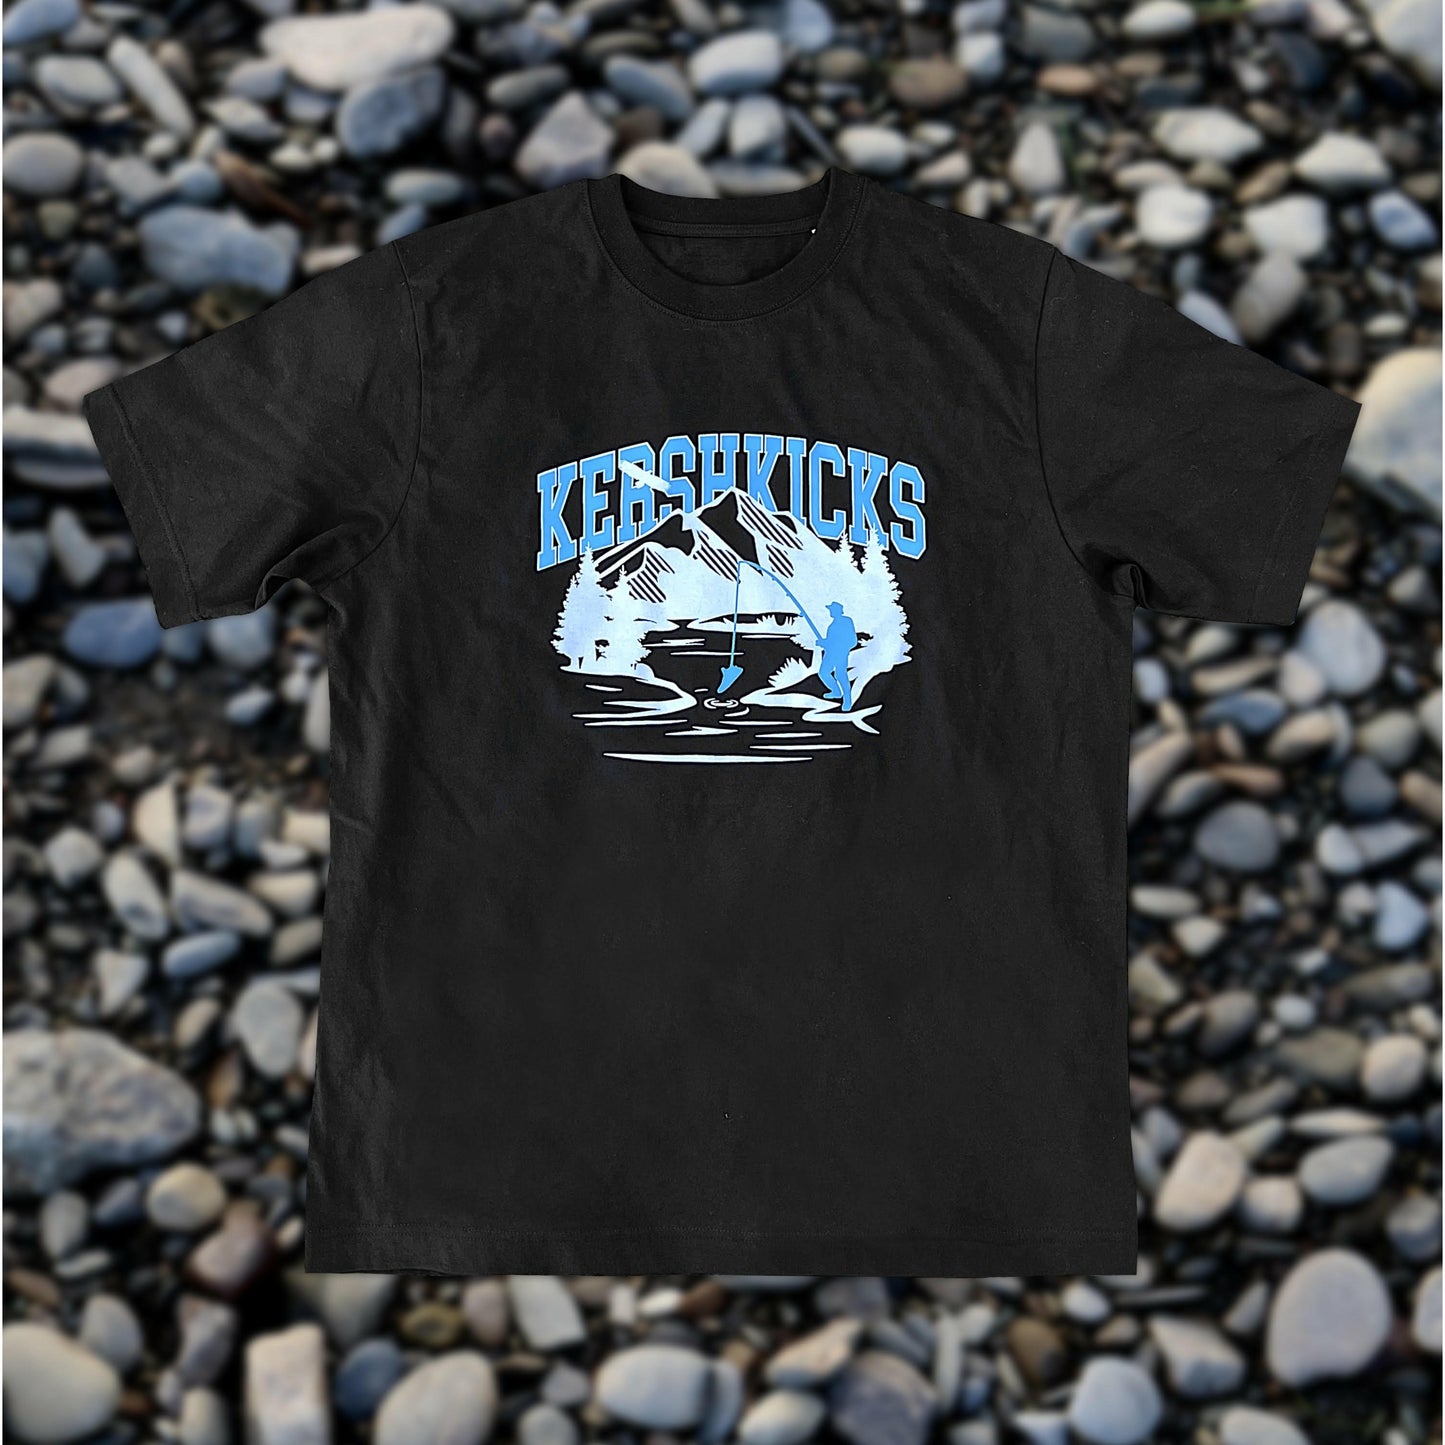 KERSHKICKS FISHING TEE from KershKicks